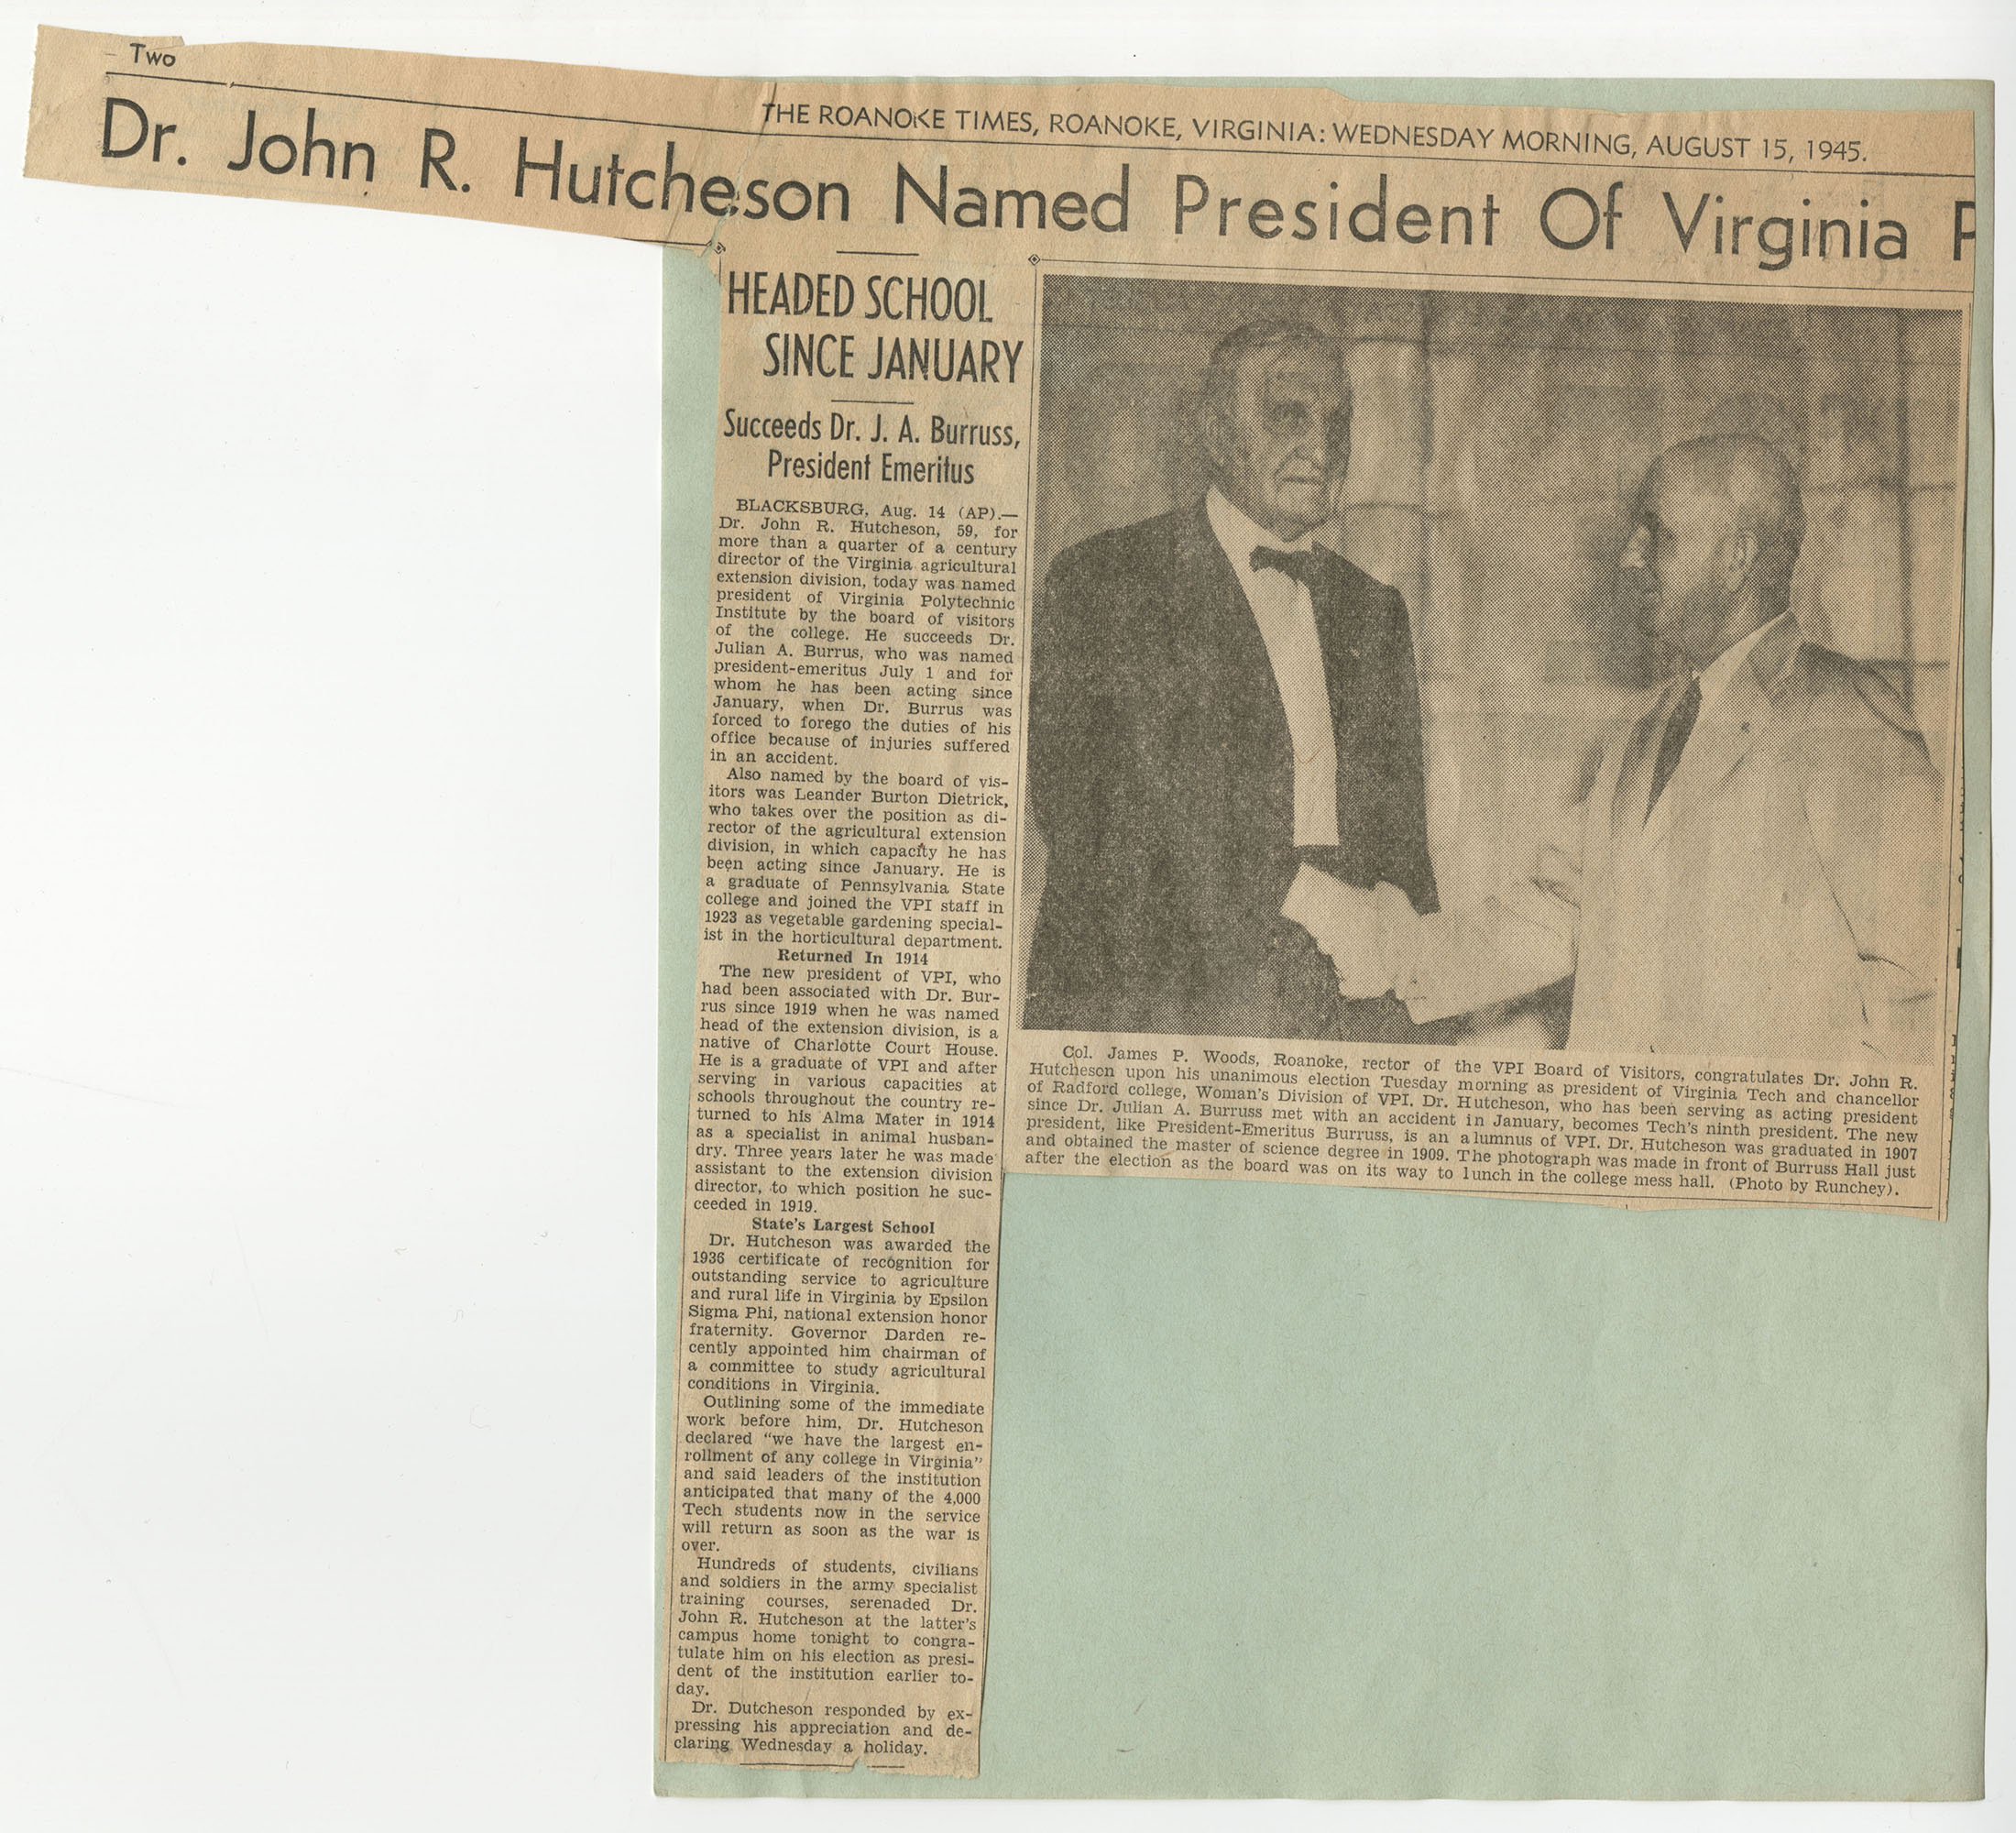 "Dr. John R. Hutcheson Named President of Virginia [Polytechnic Institute]"